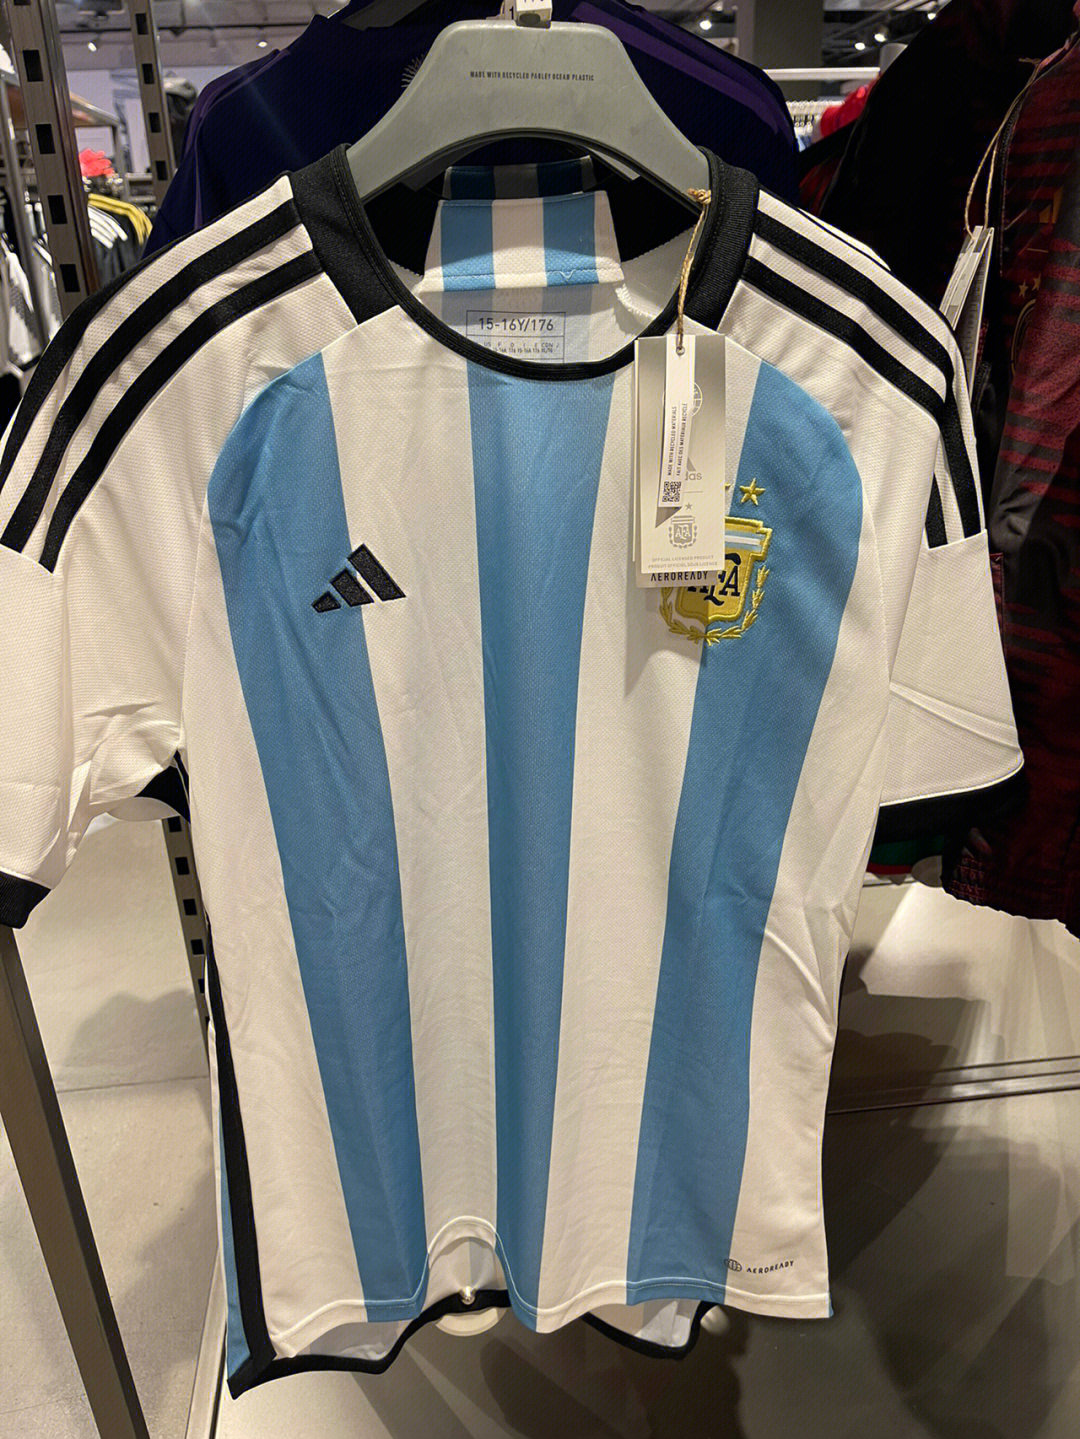 阿根廷国家队历年球衣图片